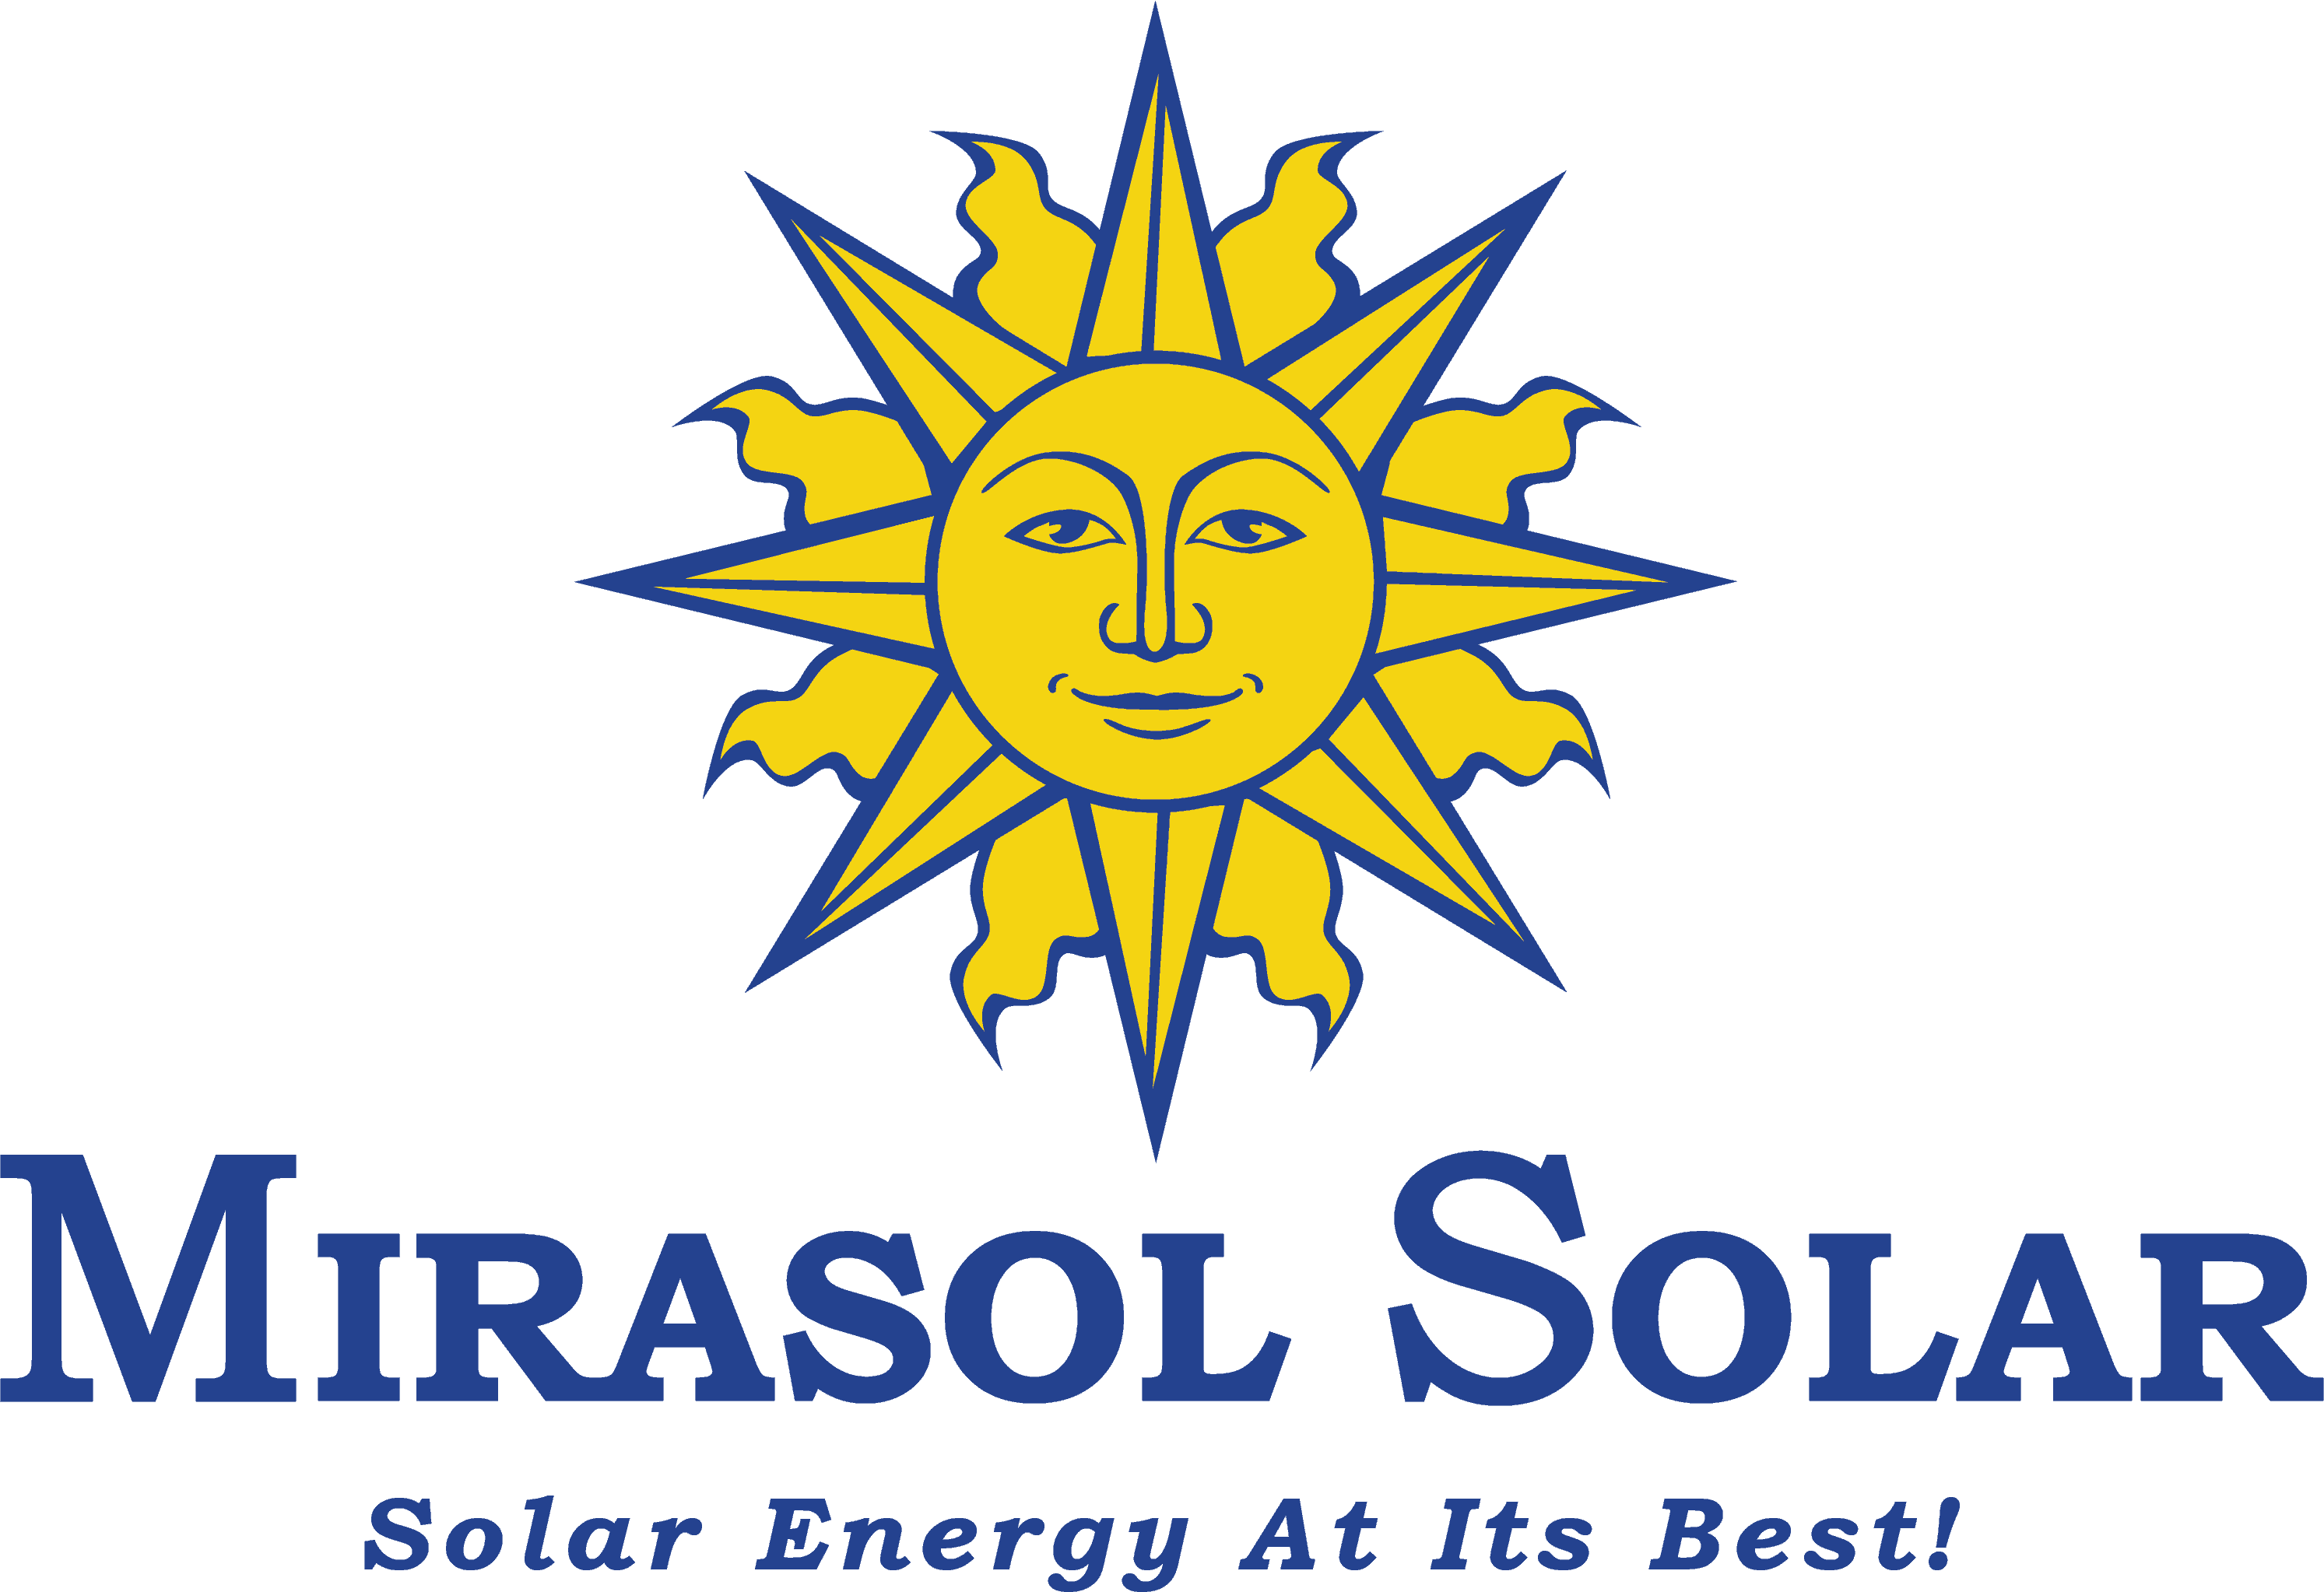 Mirasol Solar - Solar Energy At Its Best!